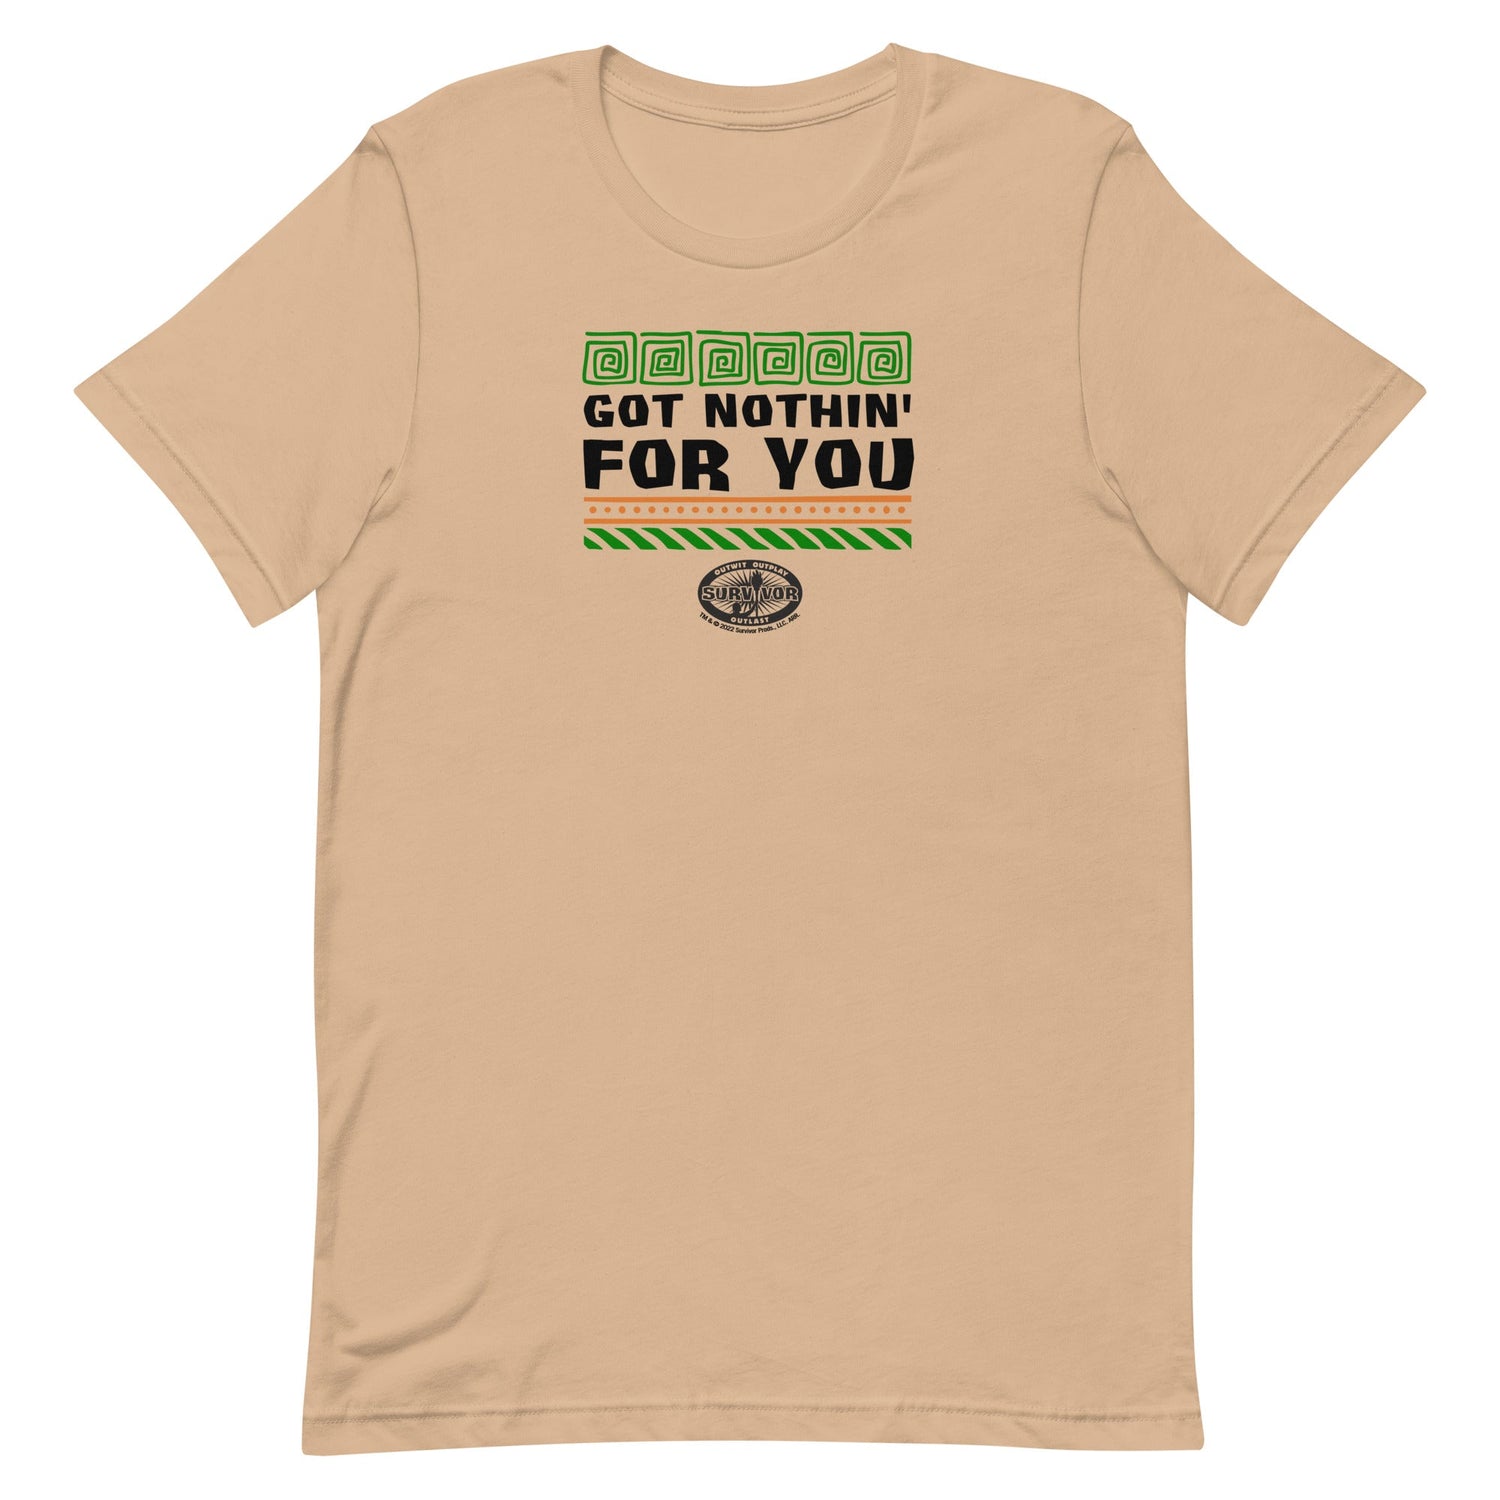 Survivor Got Nothin' For You Unisex Premium T - Shirt - Paramount Shop